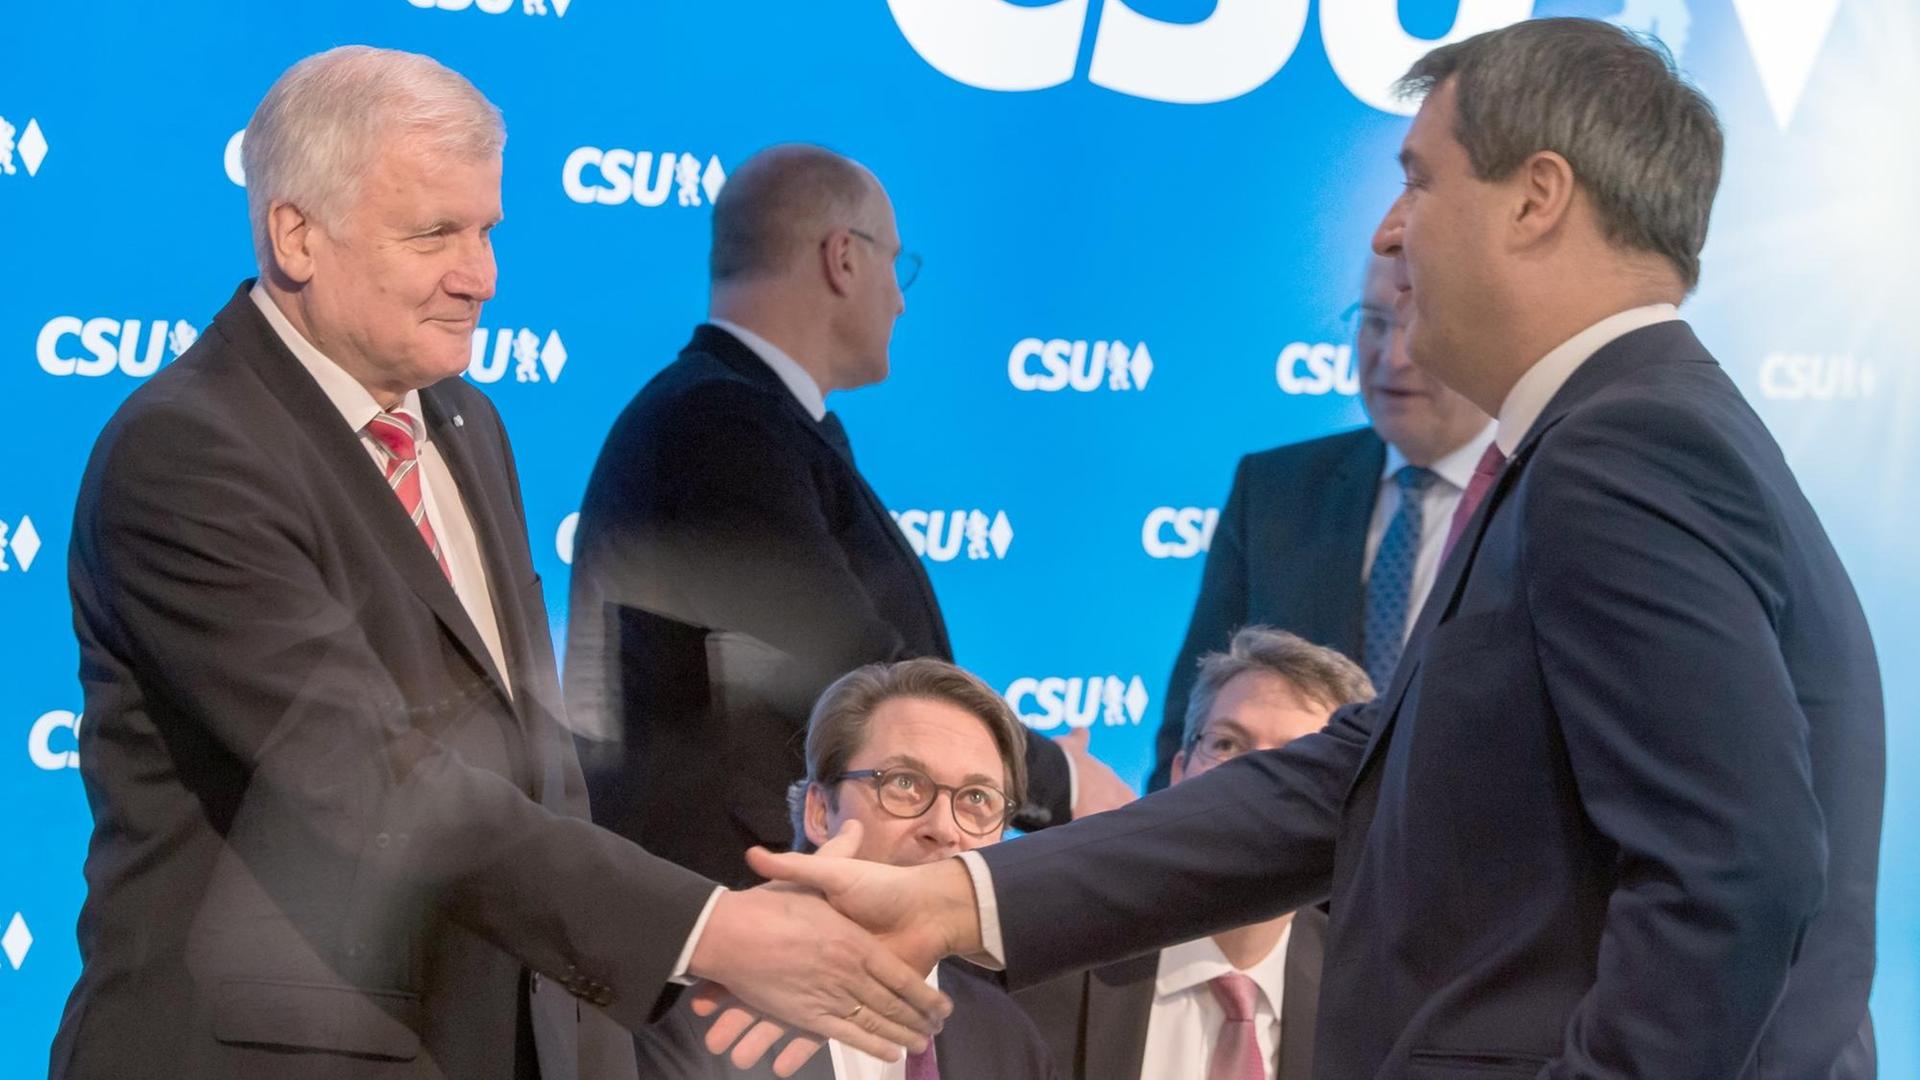 Der bayerische Ministerpräsident Horst Seehofer (l) und der bayerische Finanzminister Markus Söder (r) geben sich am 04.12.2017 in der CSU-Zentrale in München (Bayern) vor Beginn der Vorstandssitzung die Hand.